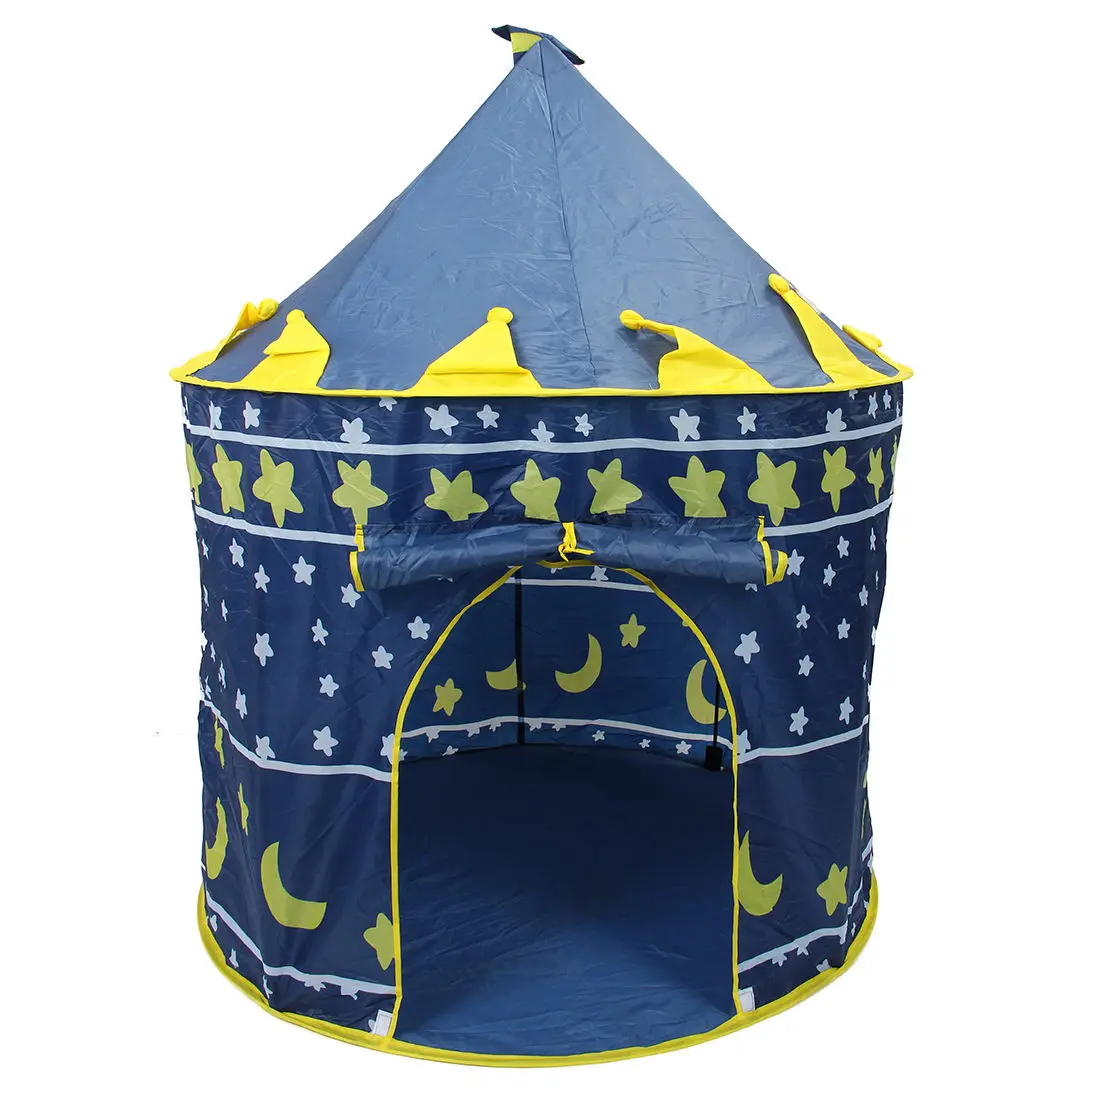 Ультра детская Пляжная палатка, детская игрушка, игровой домик, Дети Принцесса Принц замок крытый Открытый игрушки палатки рождественские подарки